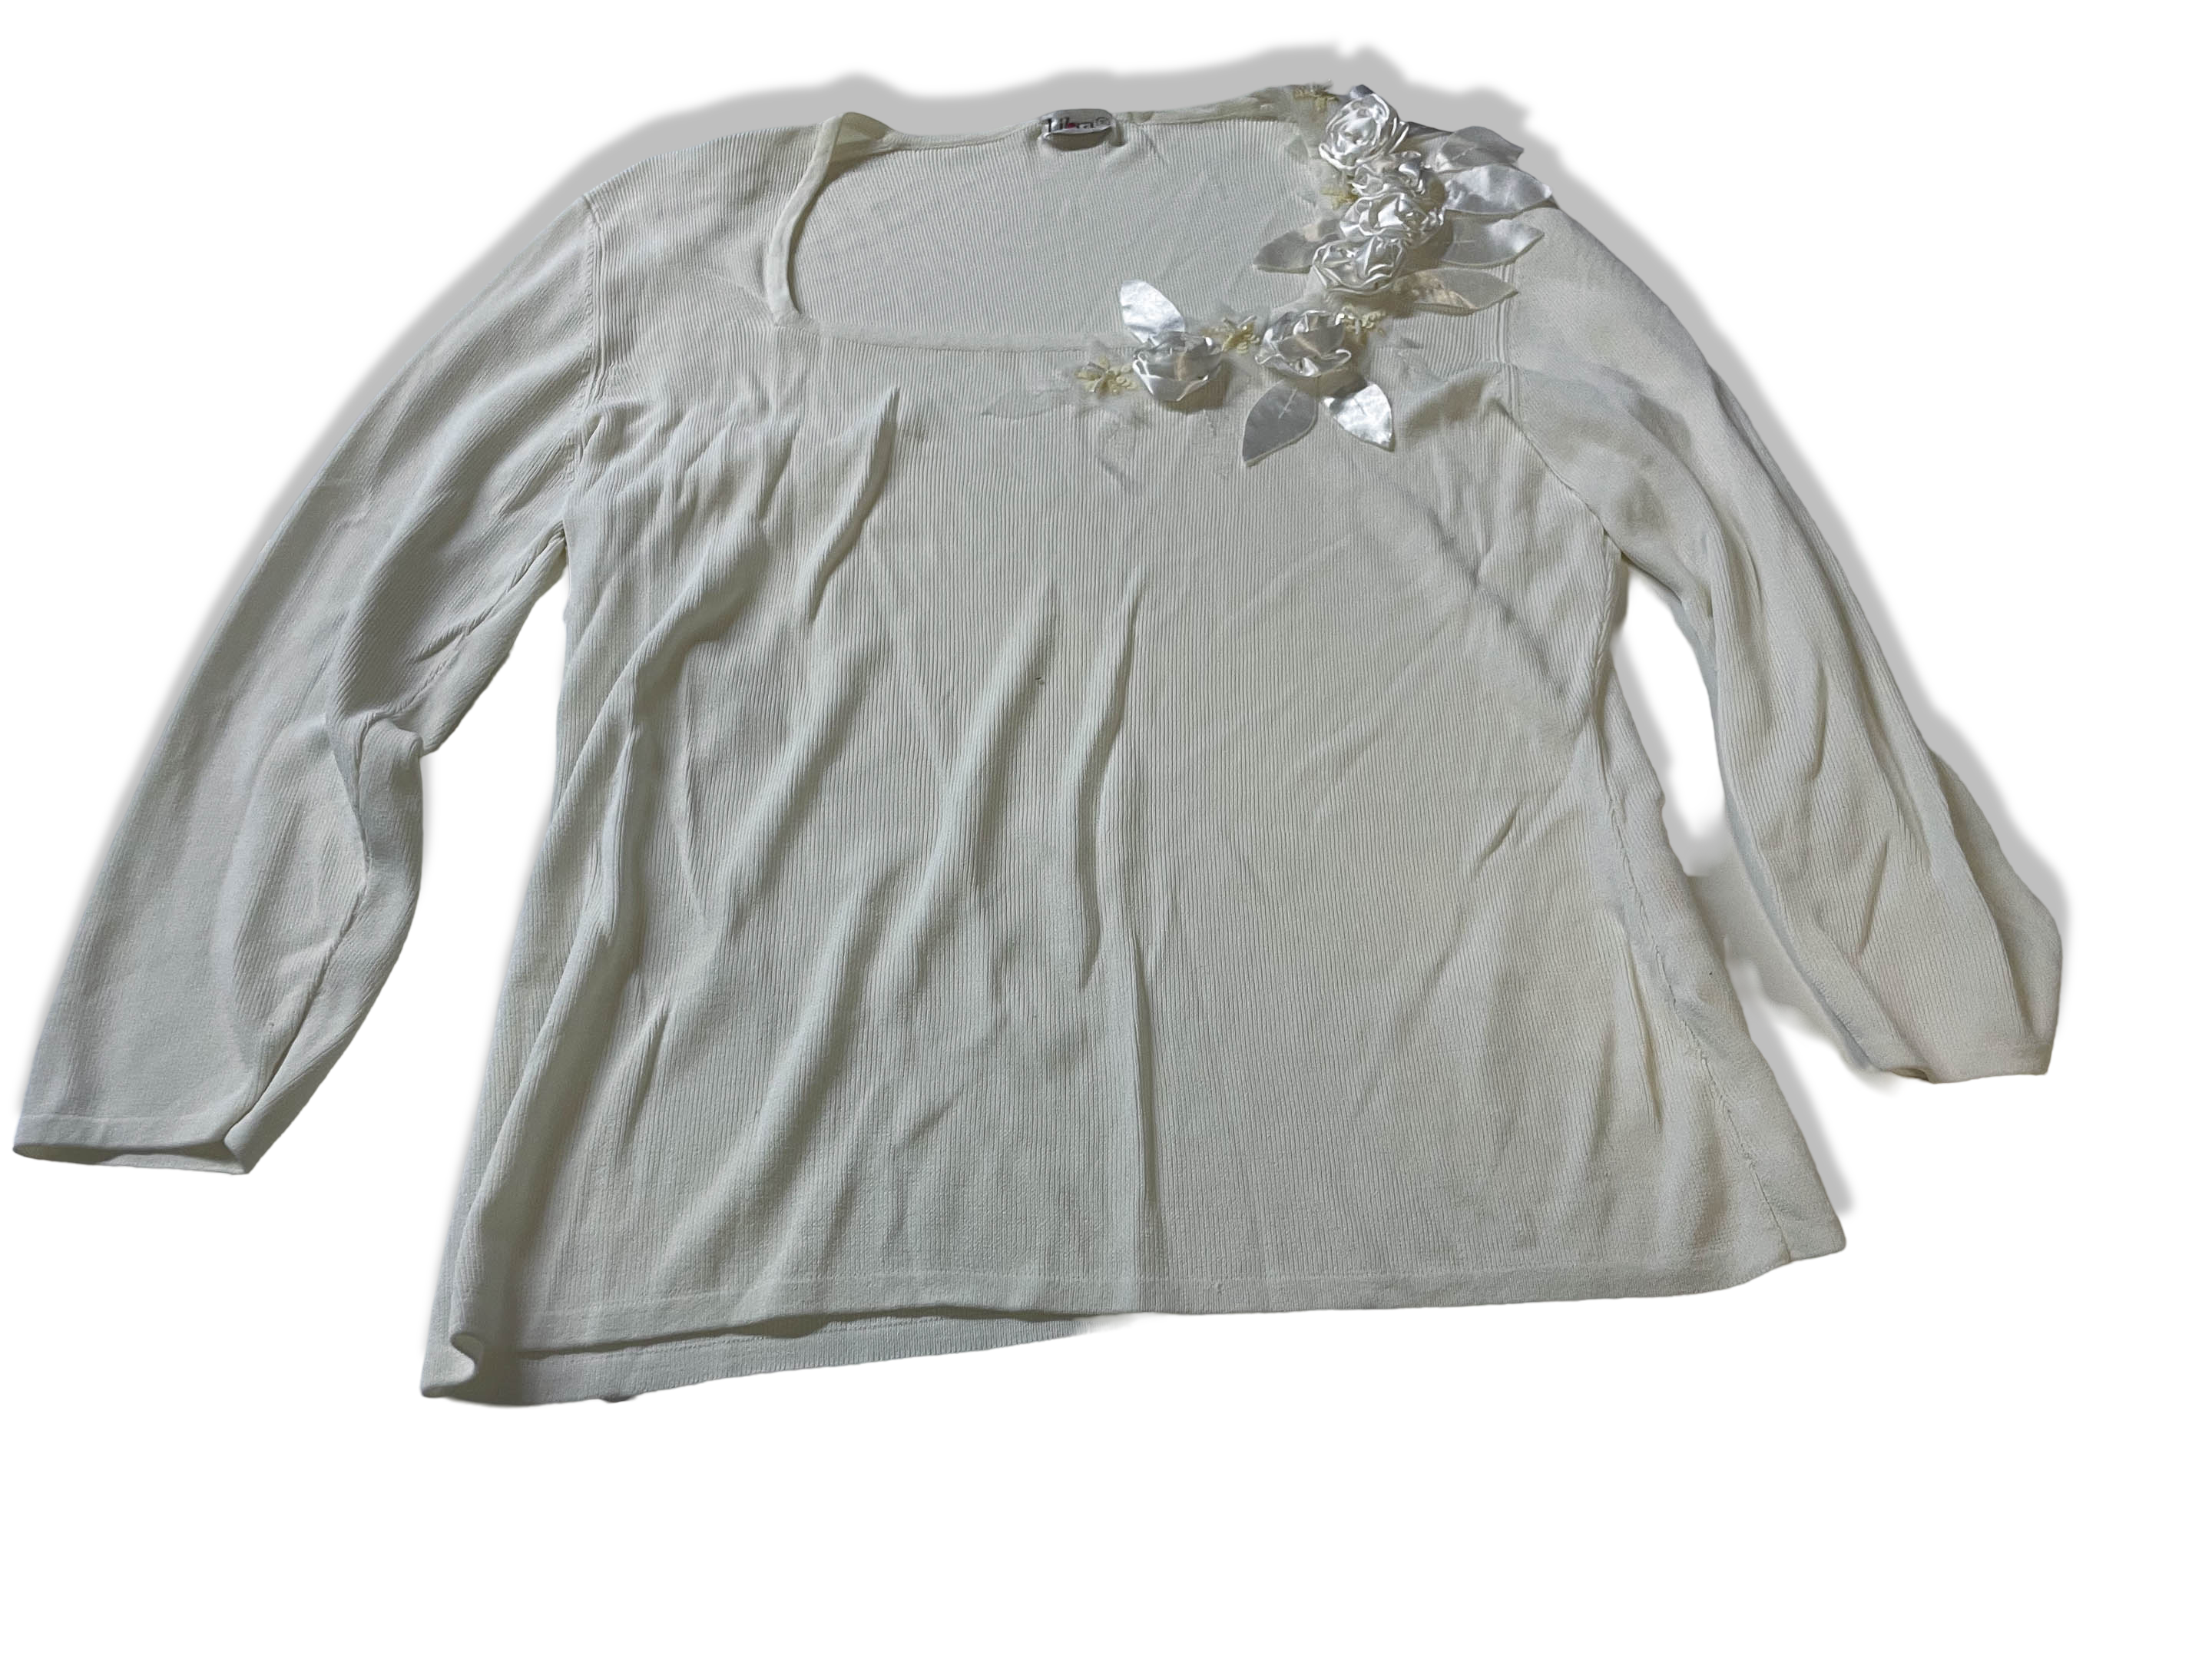 Vintage Libra women's white floral embroidery rayon blouse size 16|L23 W17|SKU 4022